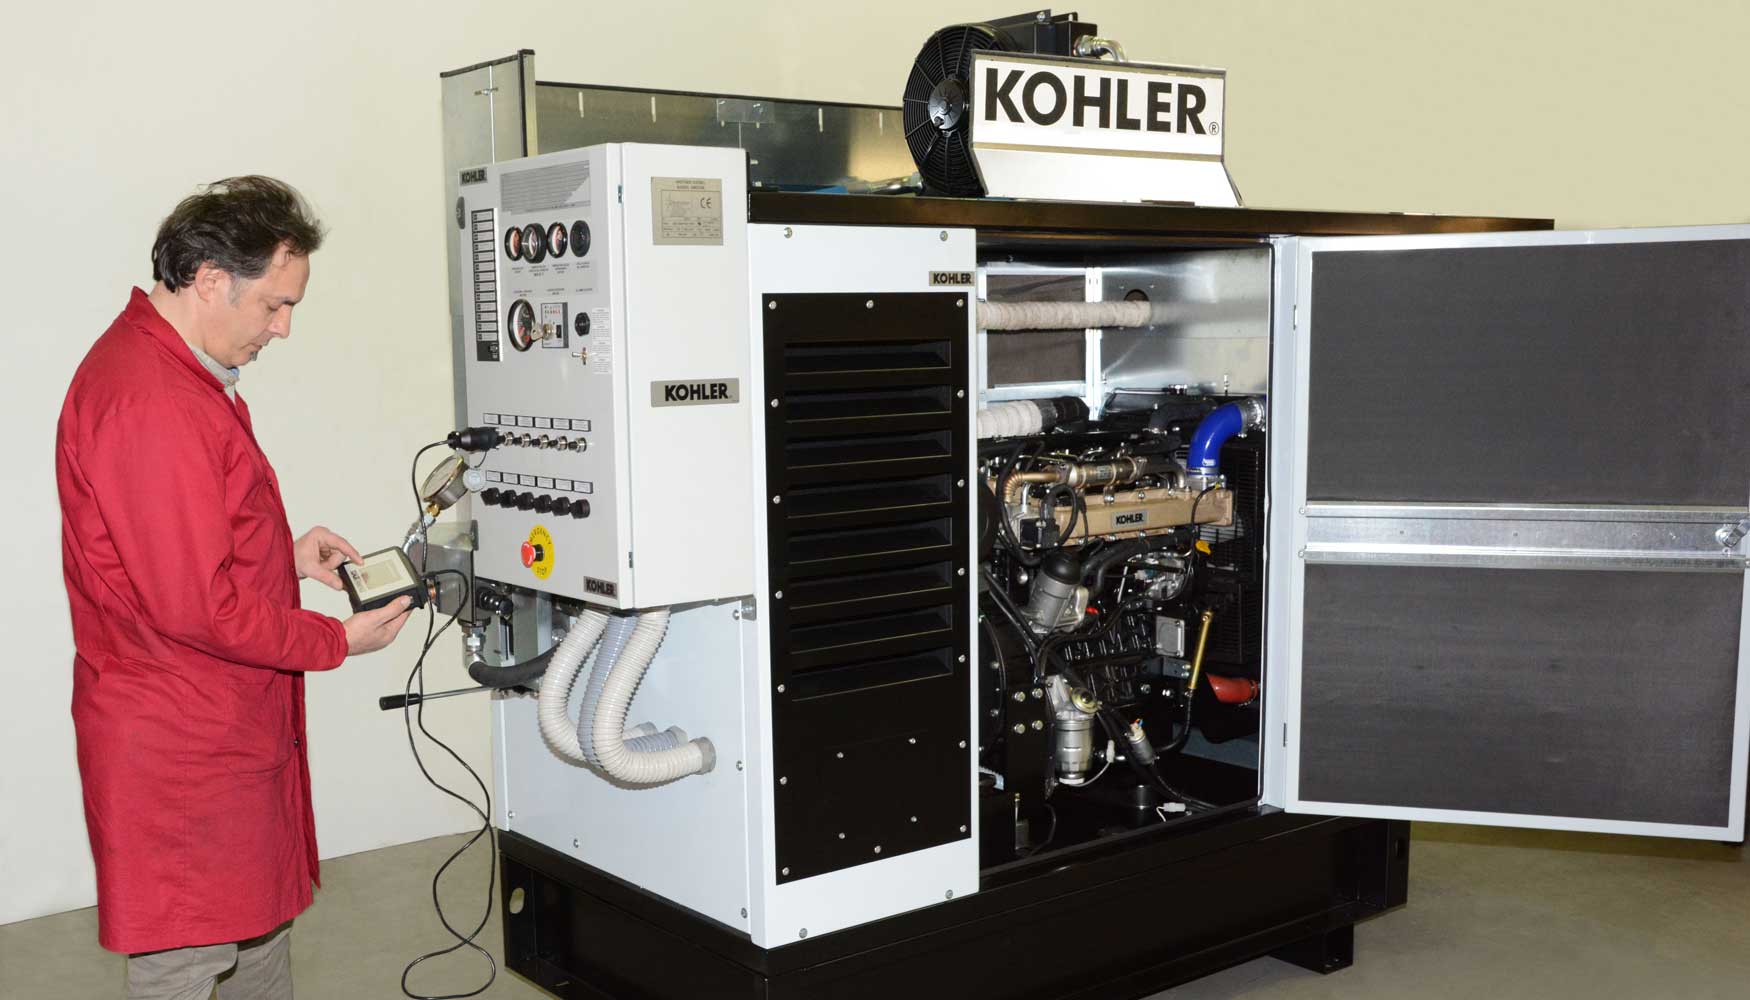 Kohler Engines sigue cuidando al mximo el servicio postventa al cliente